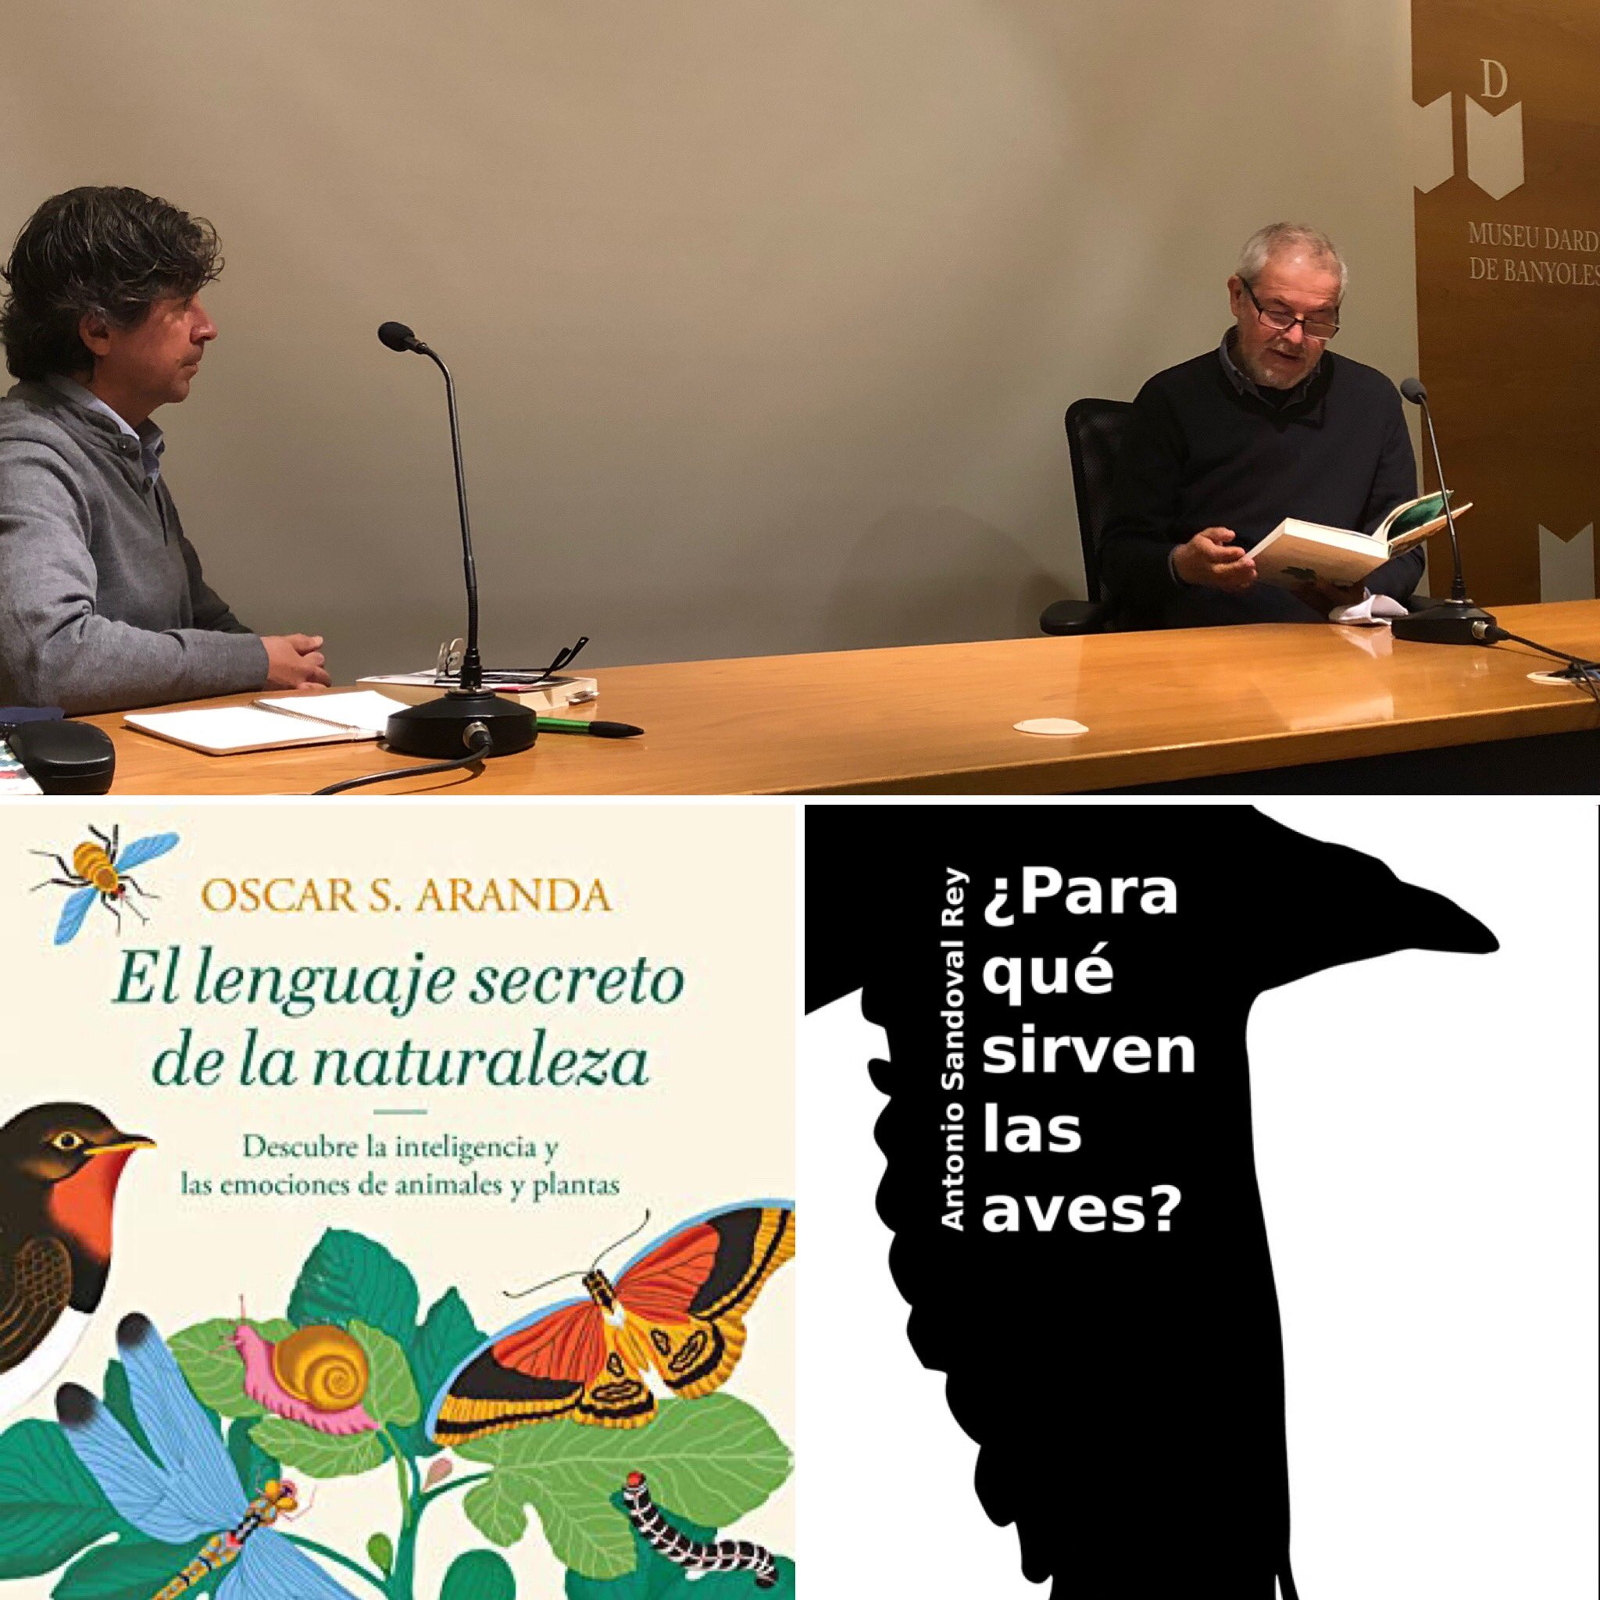 Converses de literatura i natura Antonio Sandoval i Oscar S. Aranda, dissabte 17 al Museu Darder de Banyoles